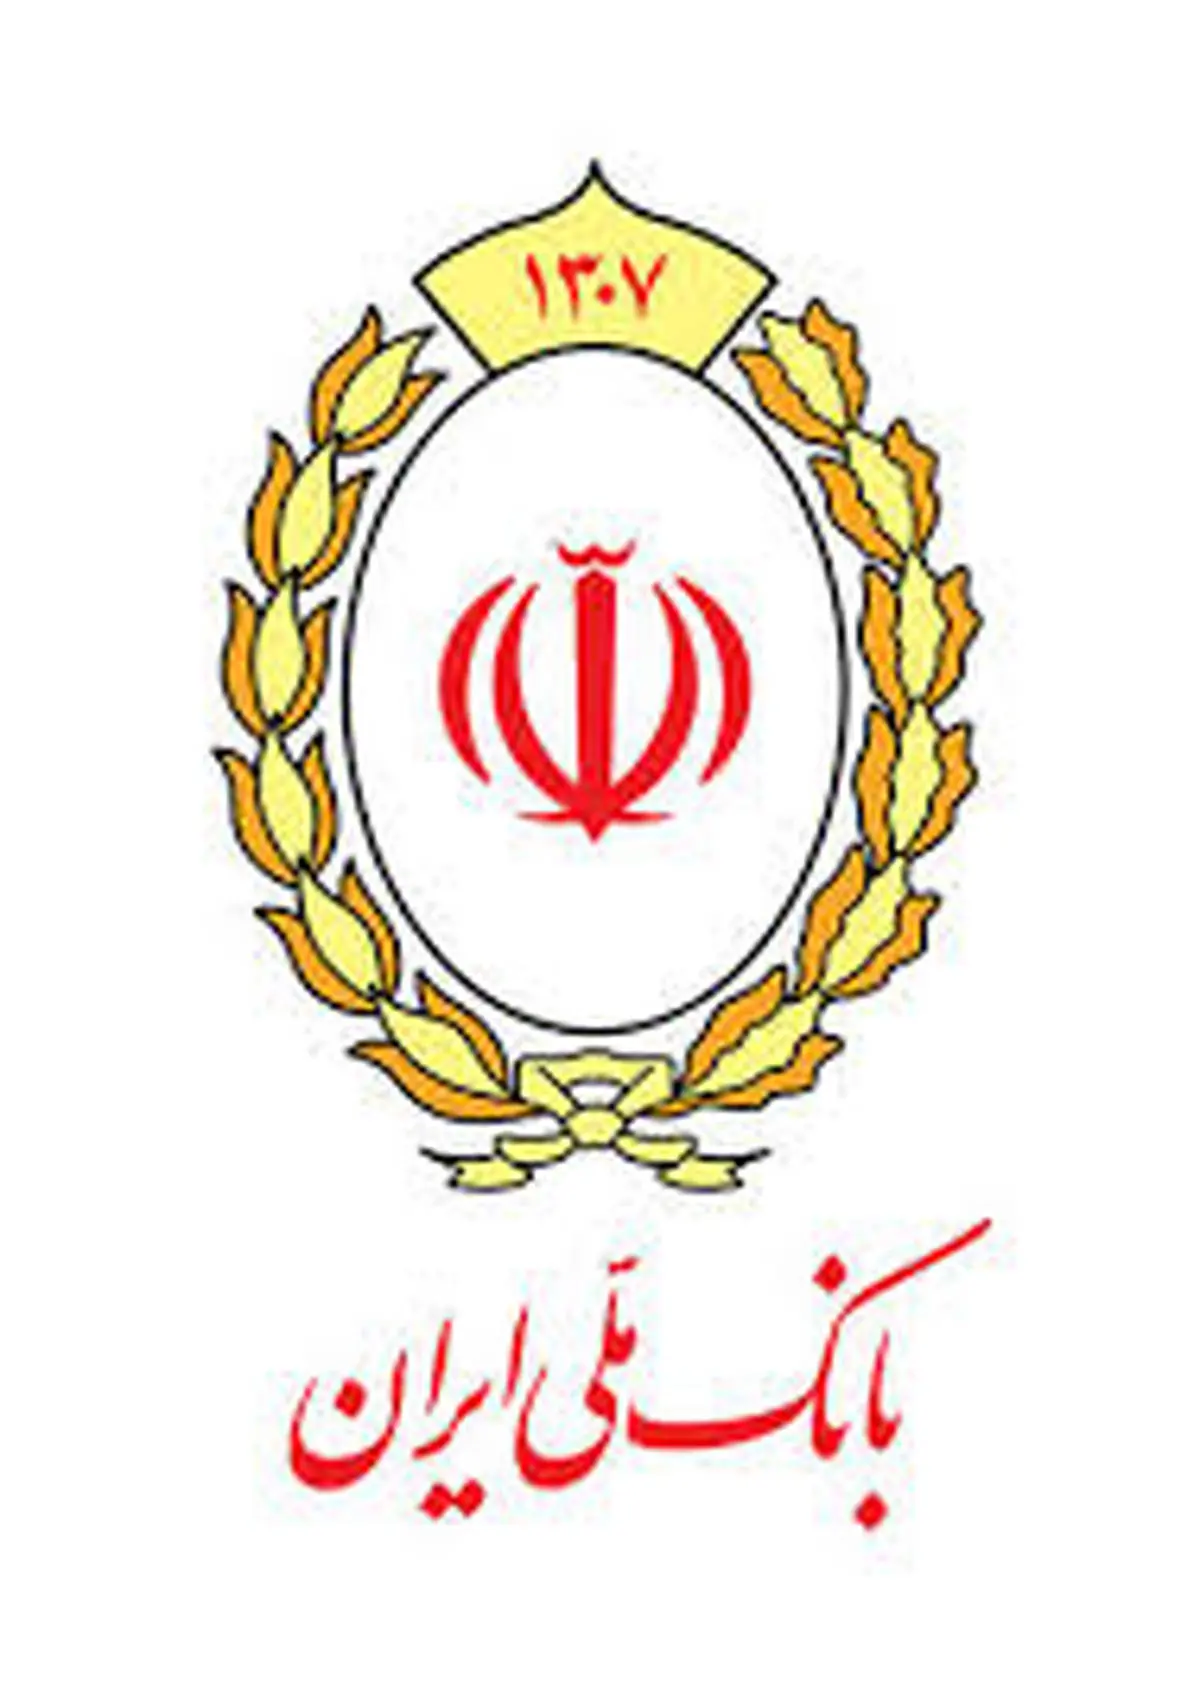 دعوت از مشتریان بانک ملی ایران برای استفاده حداکثری از خدمات بانکداری غیرحضوری

